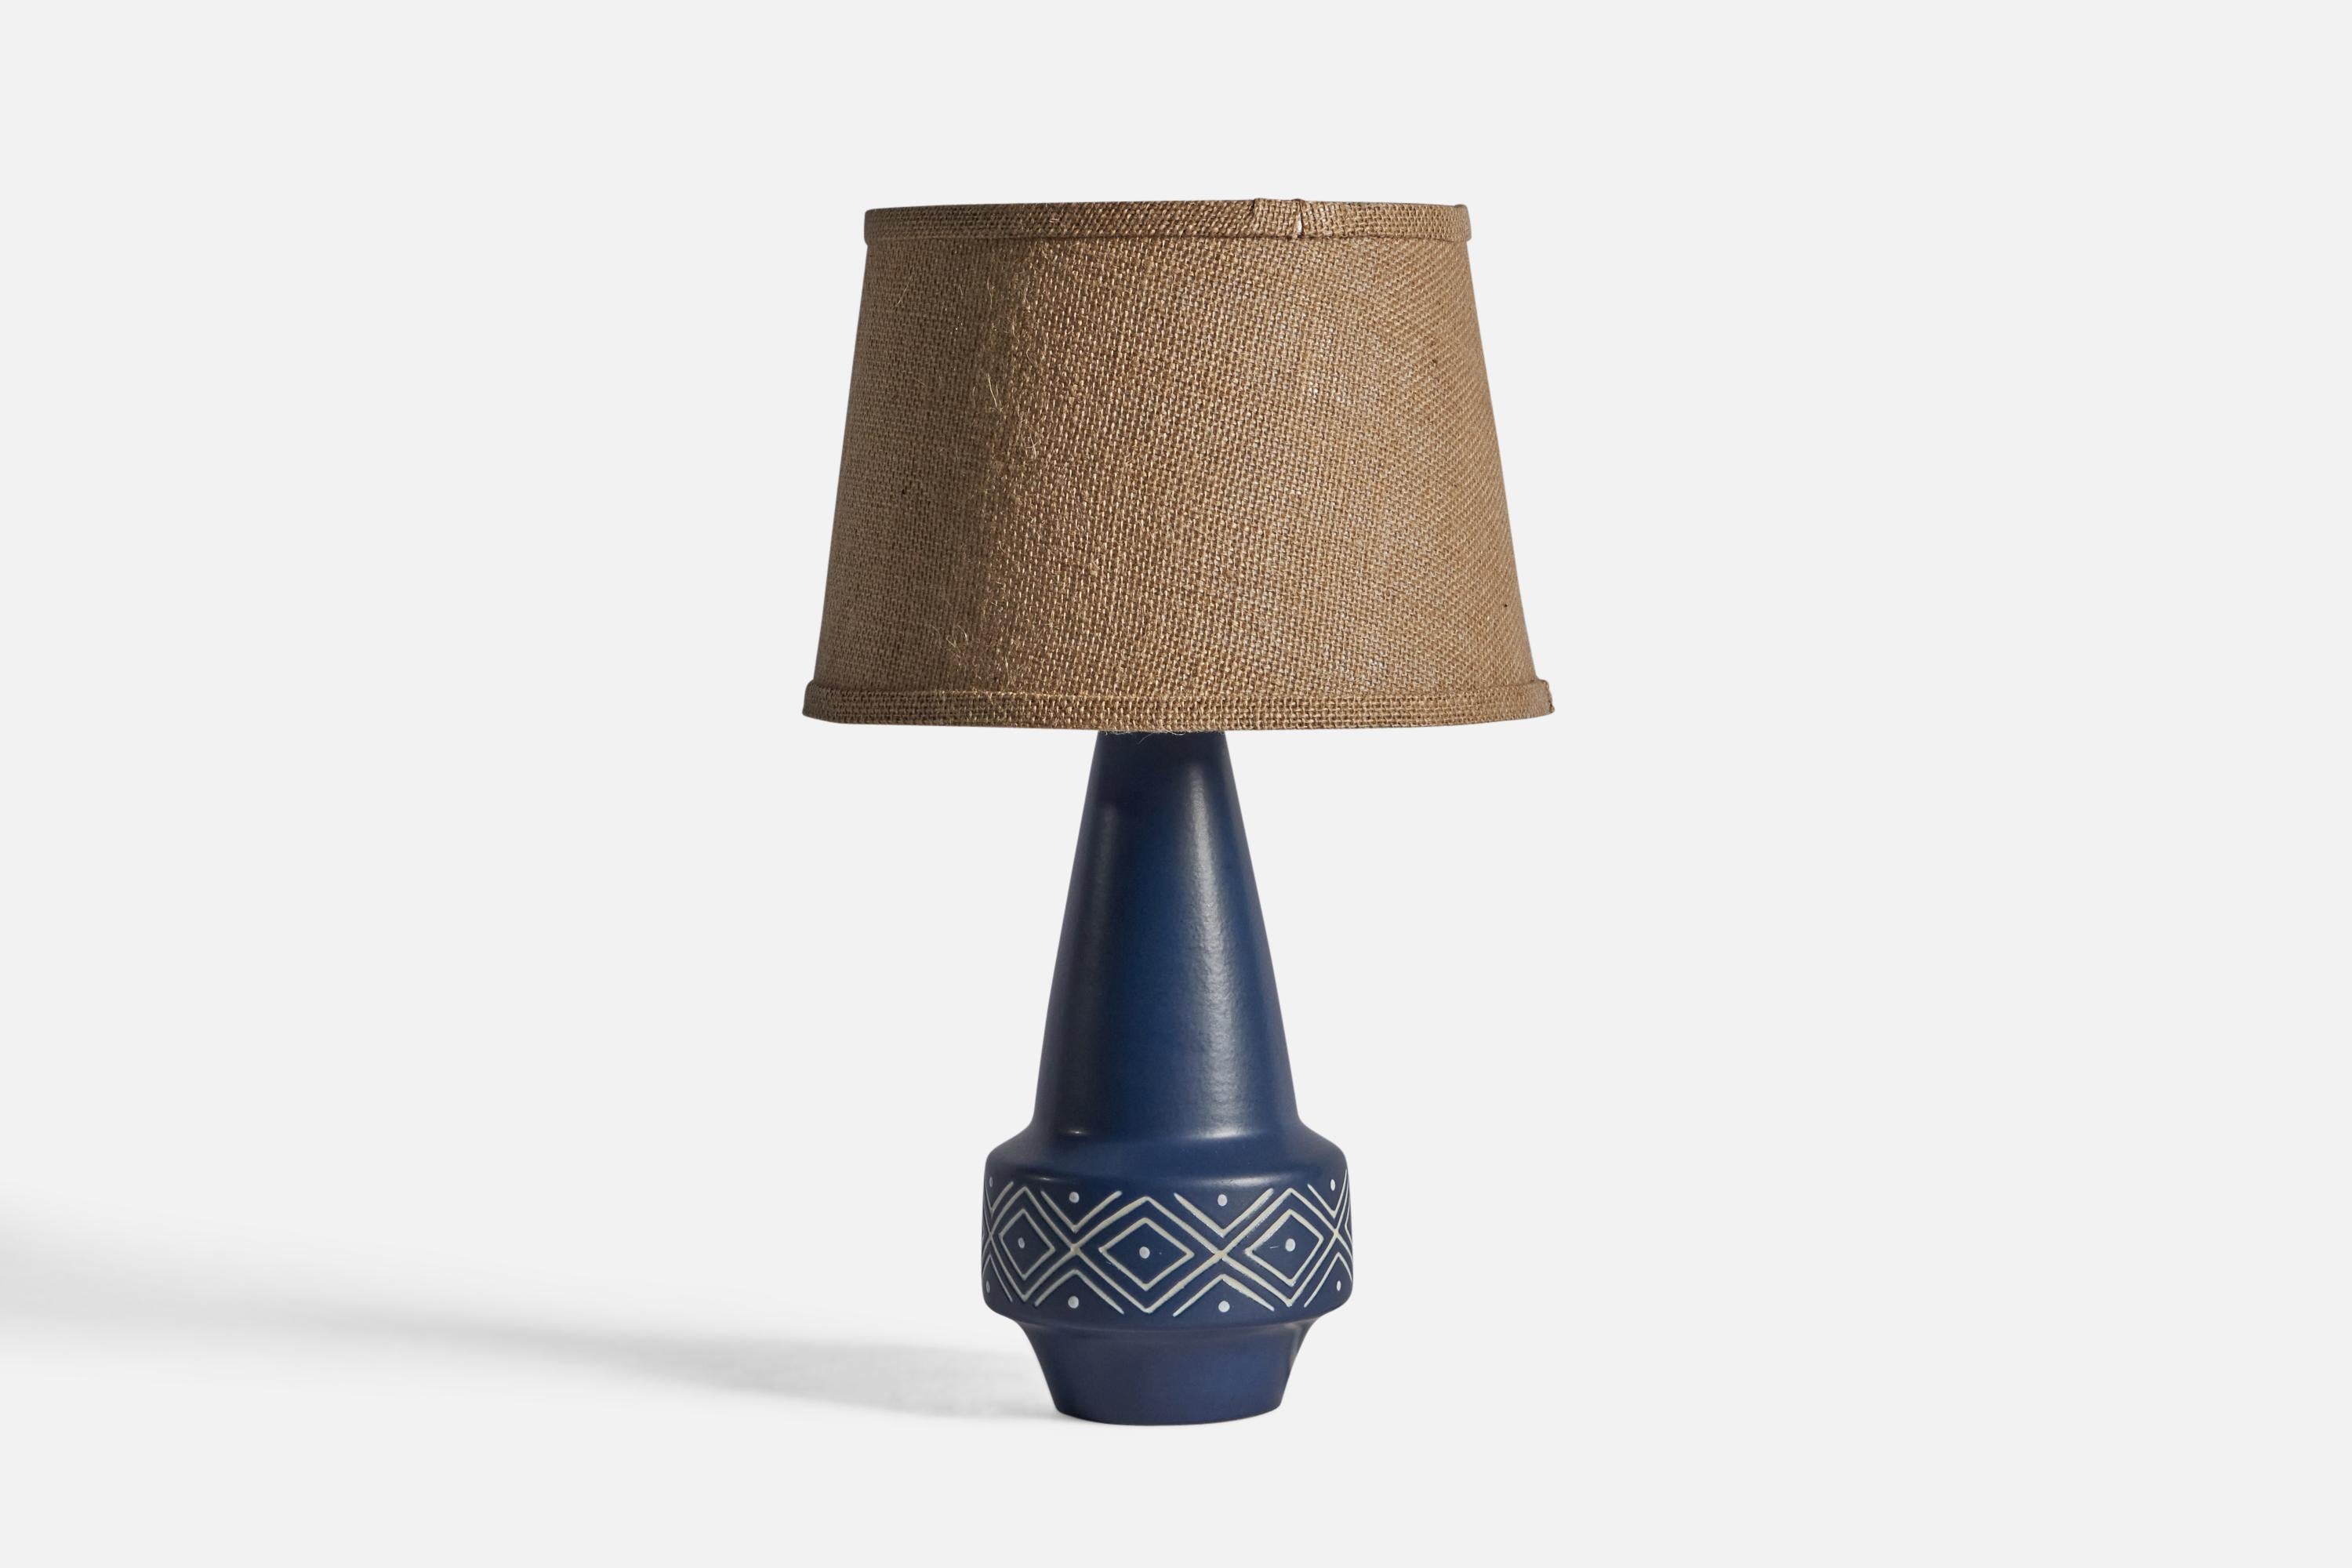 Eine blau glasierte Tischlampe, entworfen und hergestellt von Søholm, Bornholm, Dänemark, ca. 1960er Jahre.

Abmessungen der Lampe (Zoll): 13,25